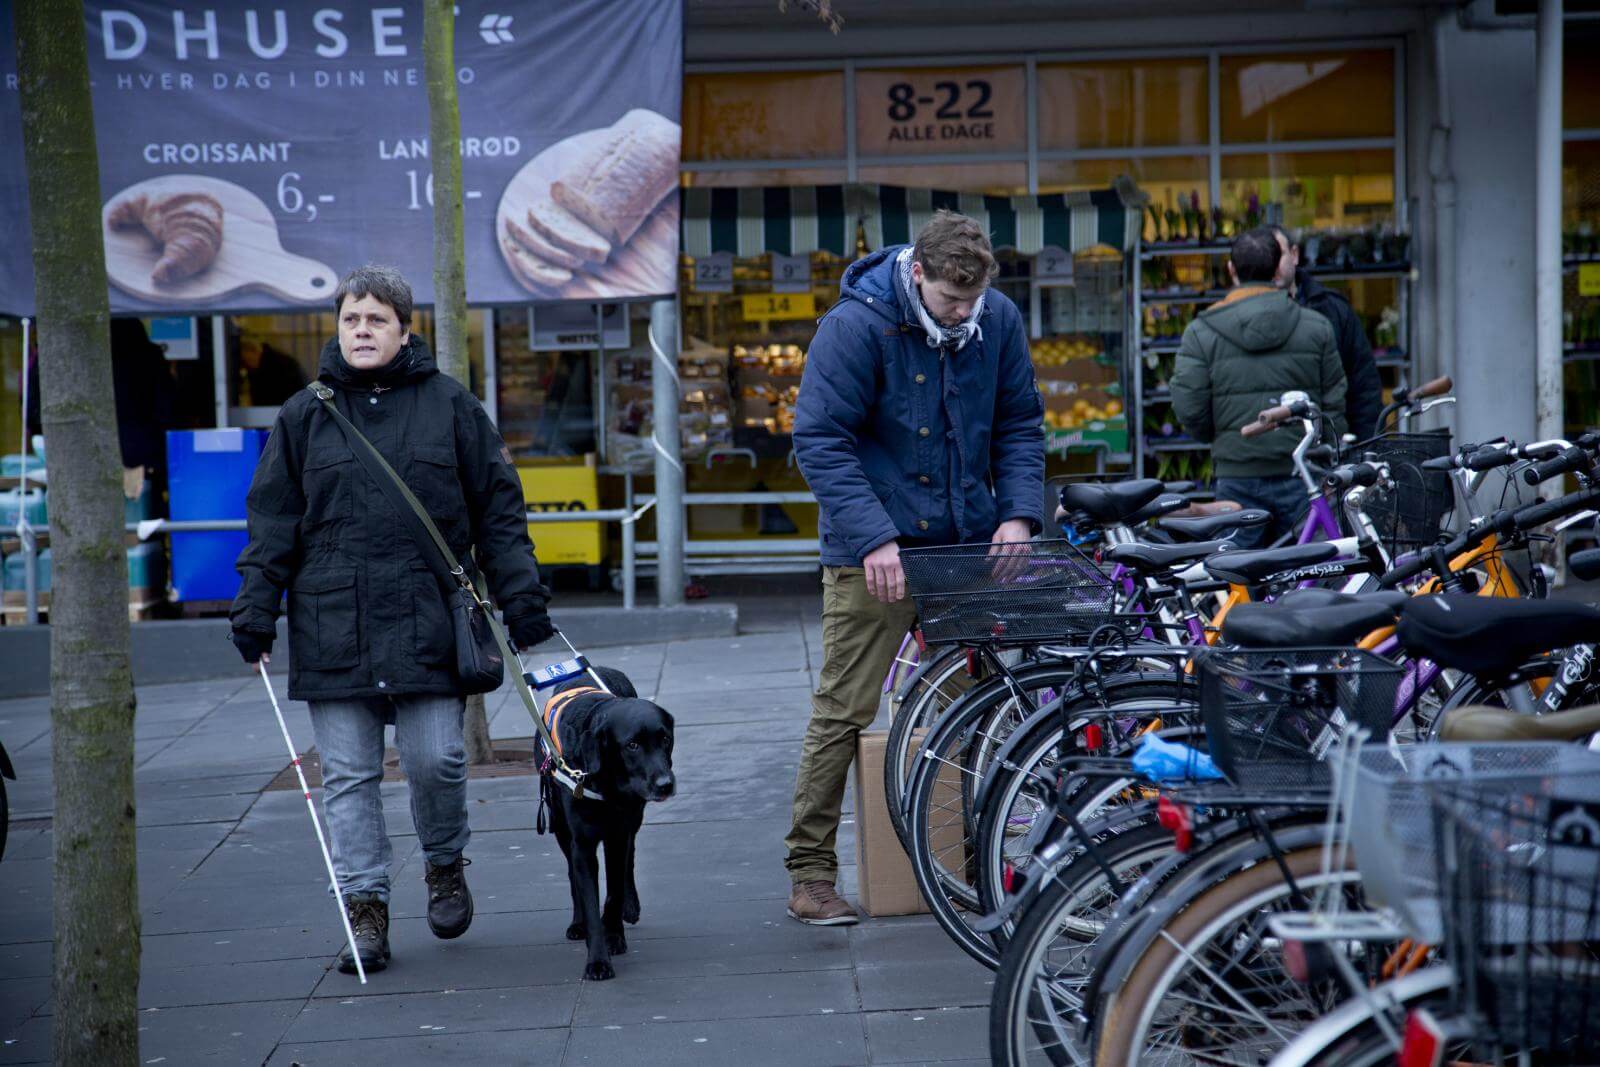 En førerhund og bruger forbi en række parkerede cykler